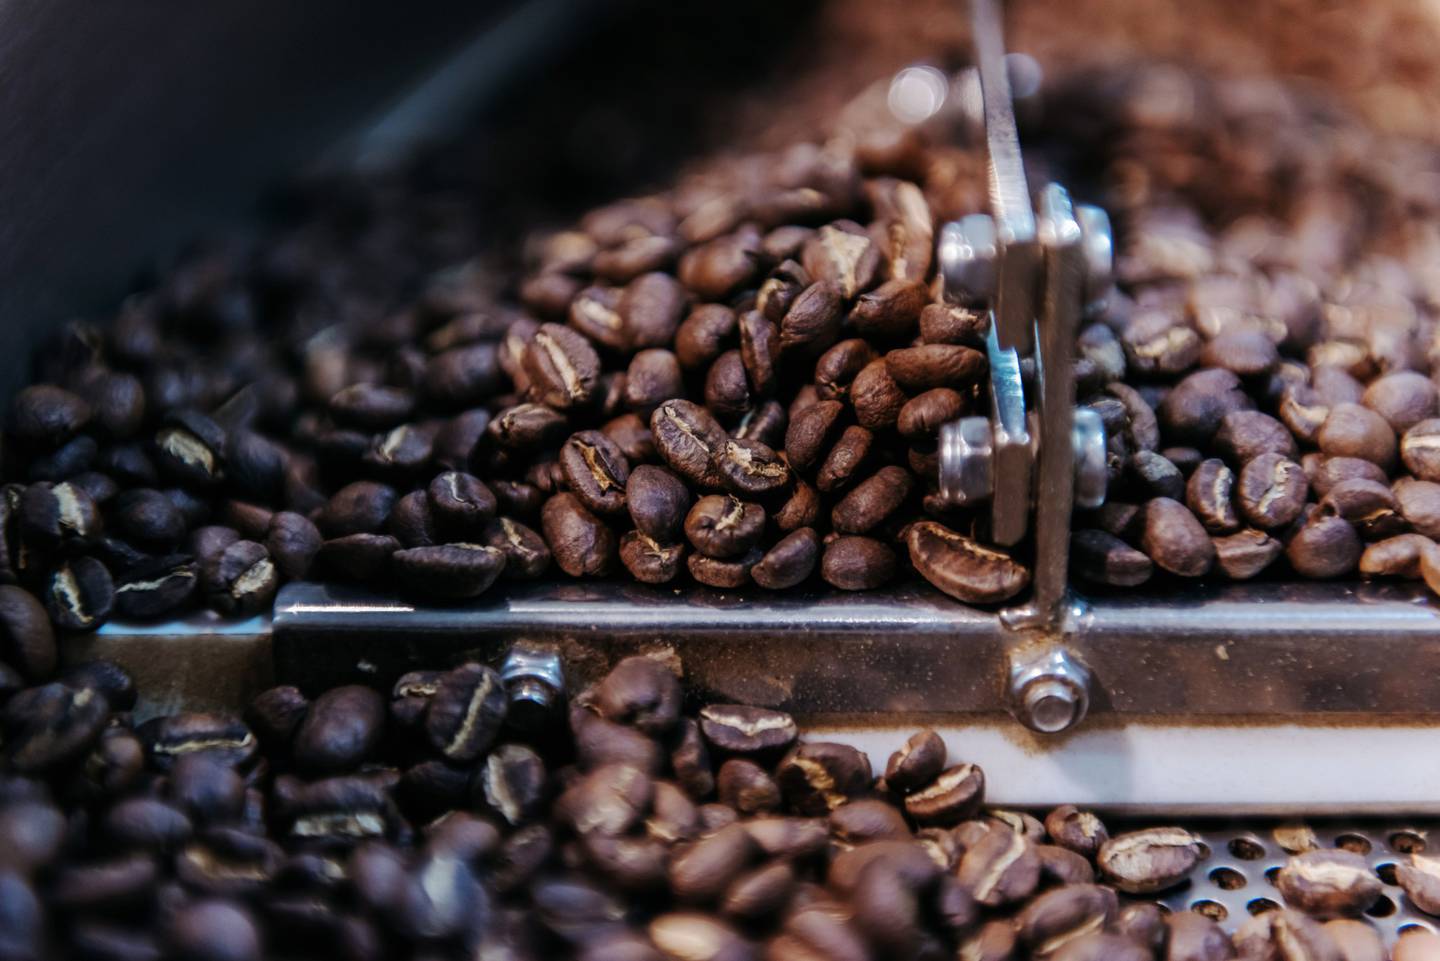 Los granos de café se tuestan en el laboratorio de investigación y desarrollo Roastery Lab by Cof